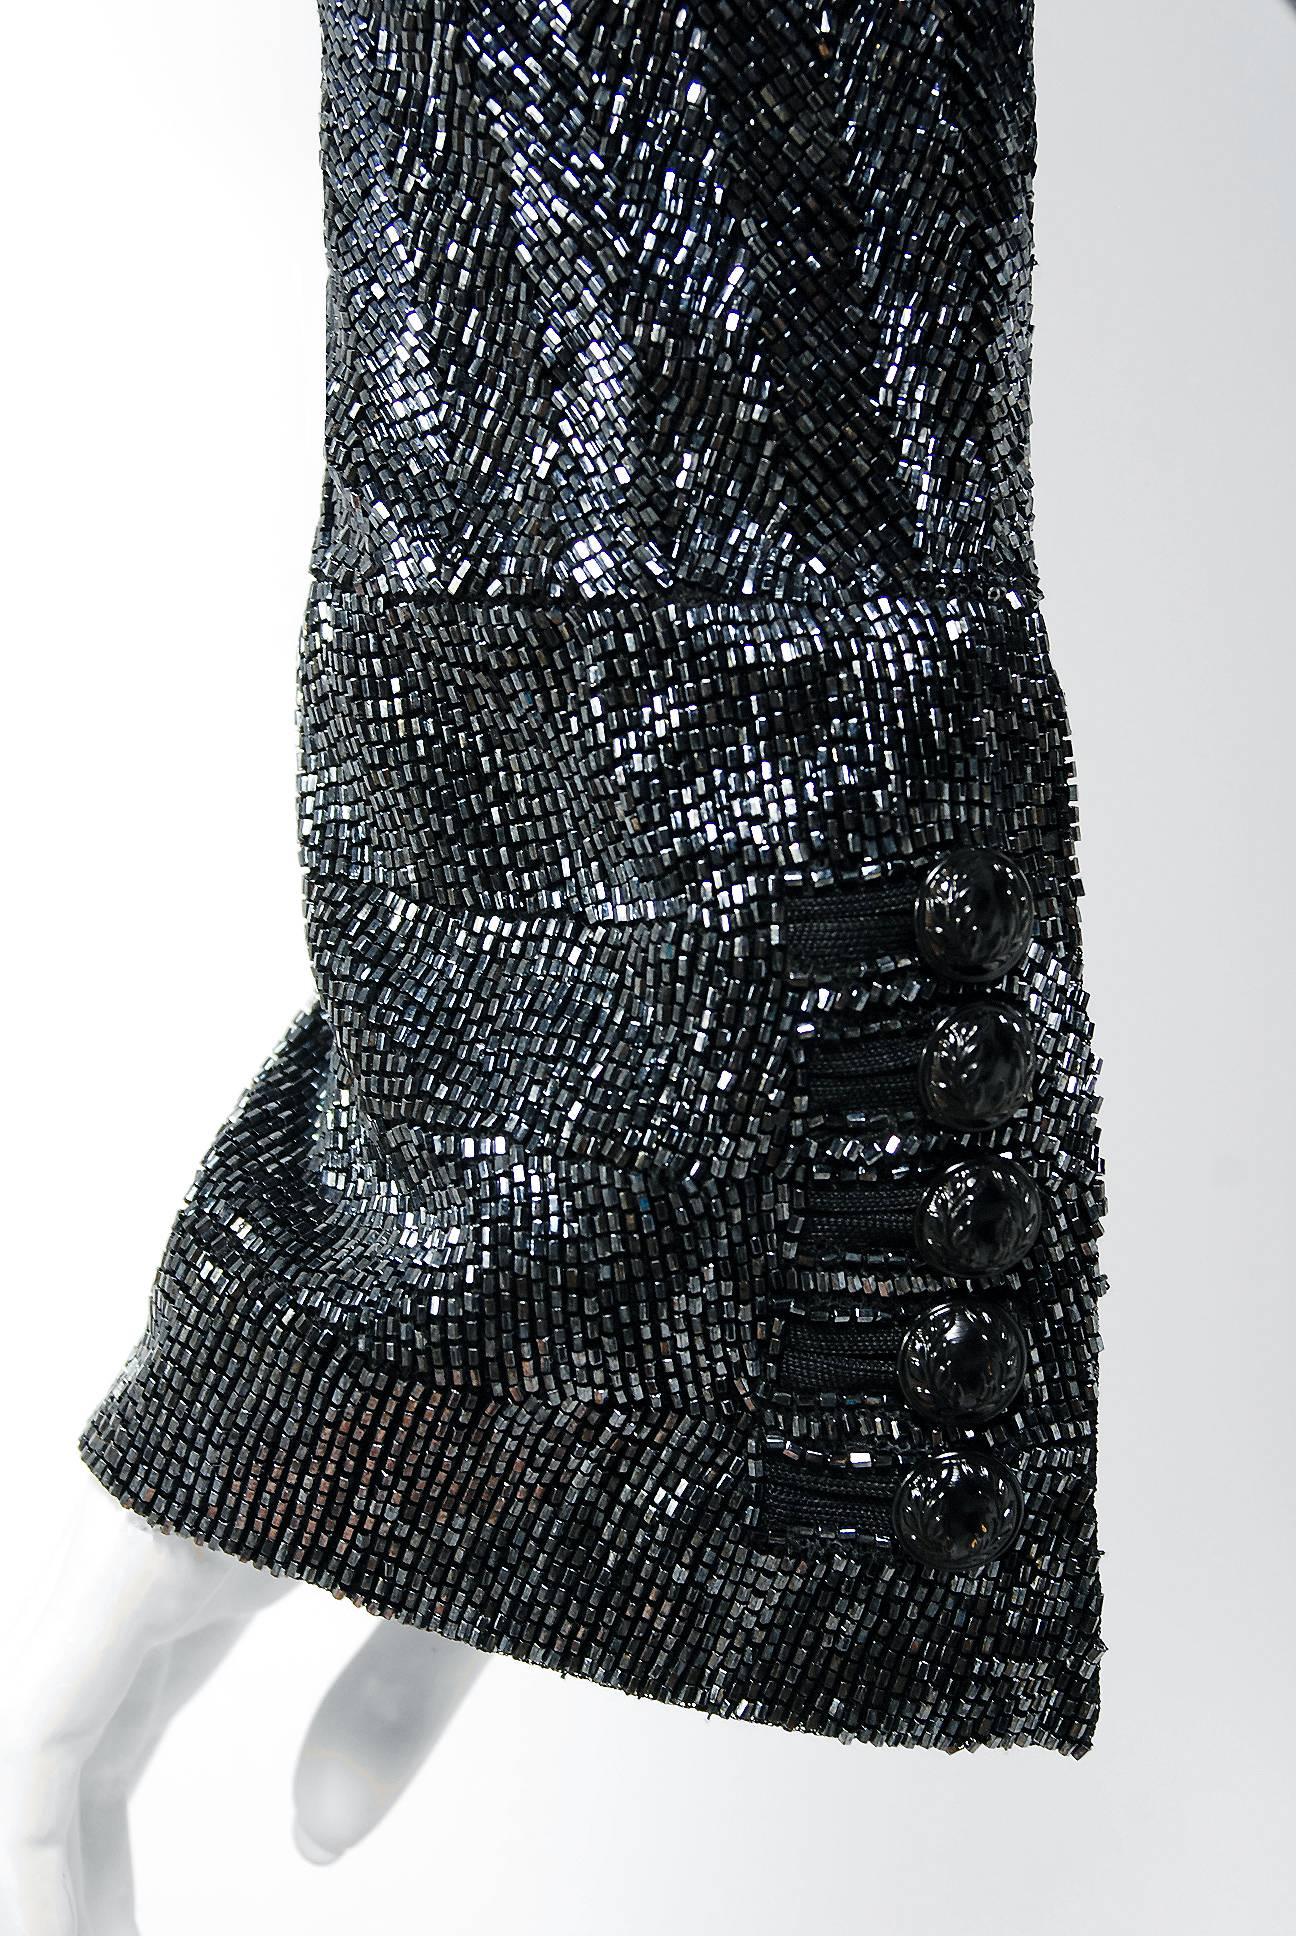 2005 Balenciaga Runway Couture Lesage Beaded Black Sculpted Tuxedo ...